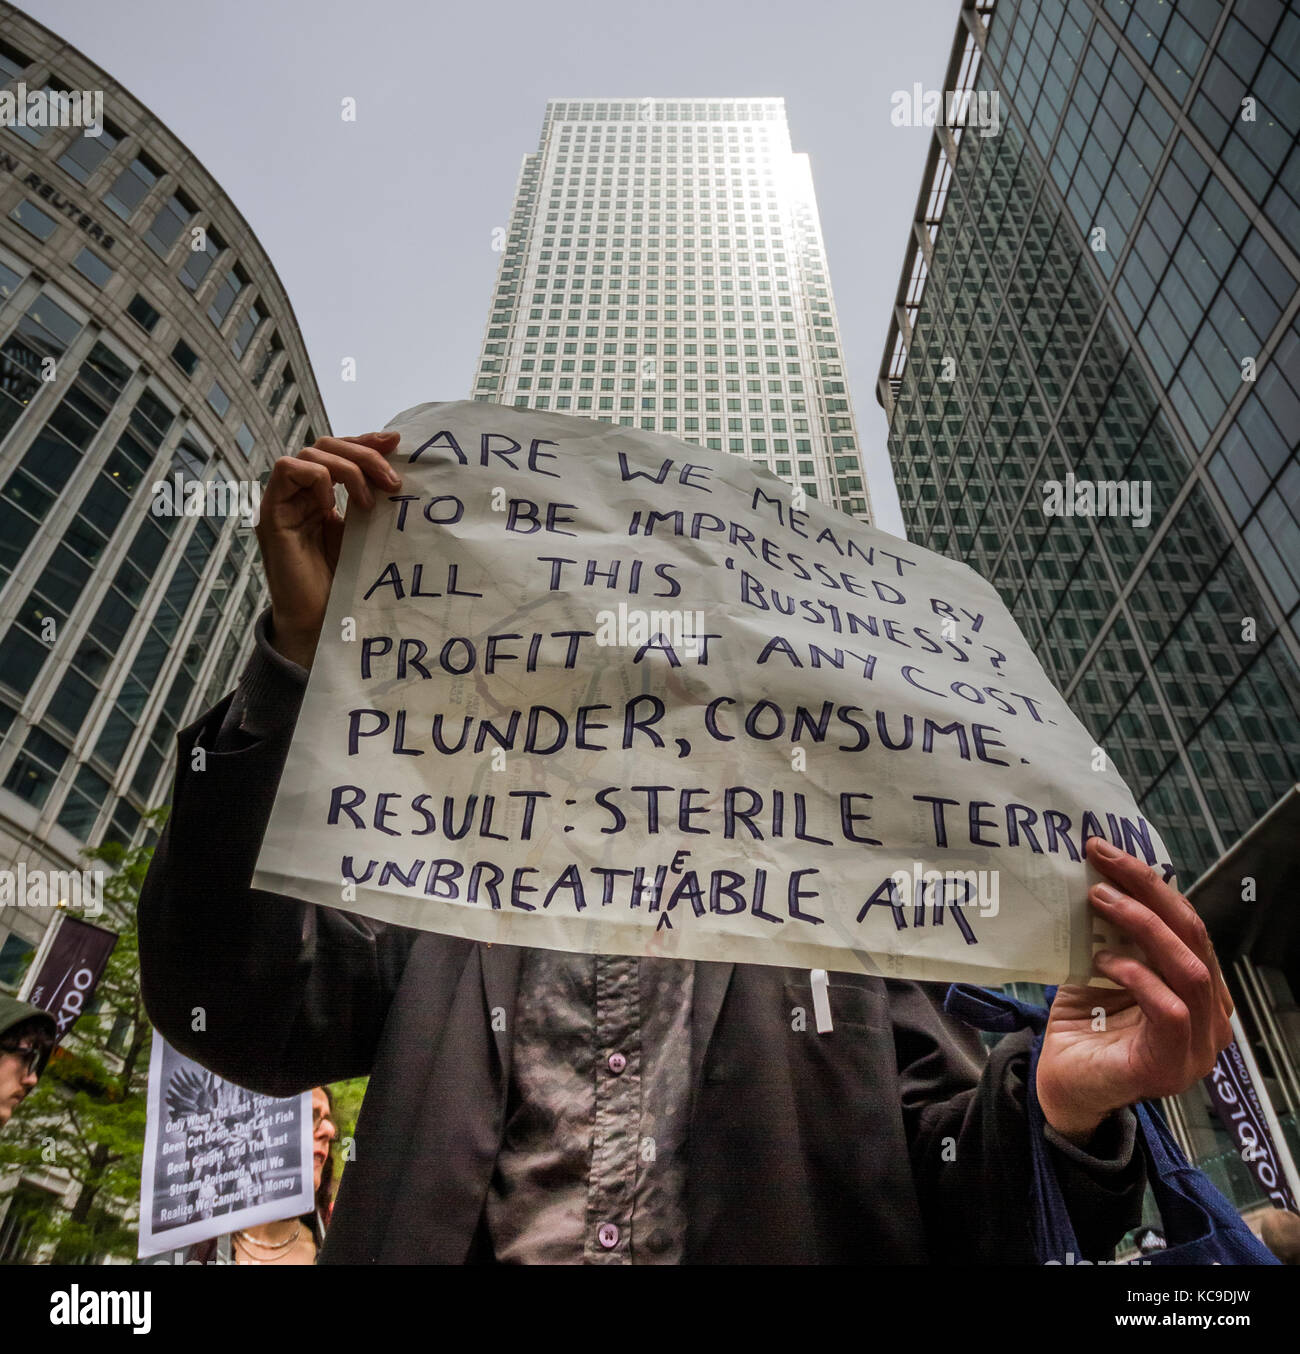 "Ellos nos deben" protesta en Canary Wharf, en el este de Londres ve activistas climáticos unirse anti-capitalistas a ocupar uno de los distritos financieros de las ciudades clave. Foto de stock